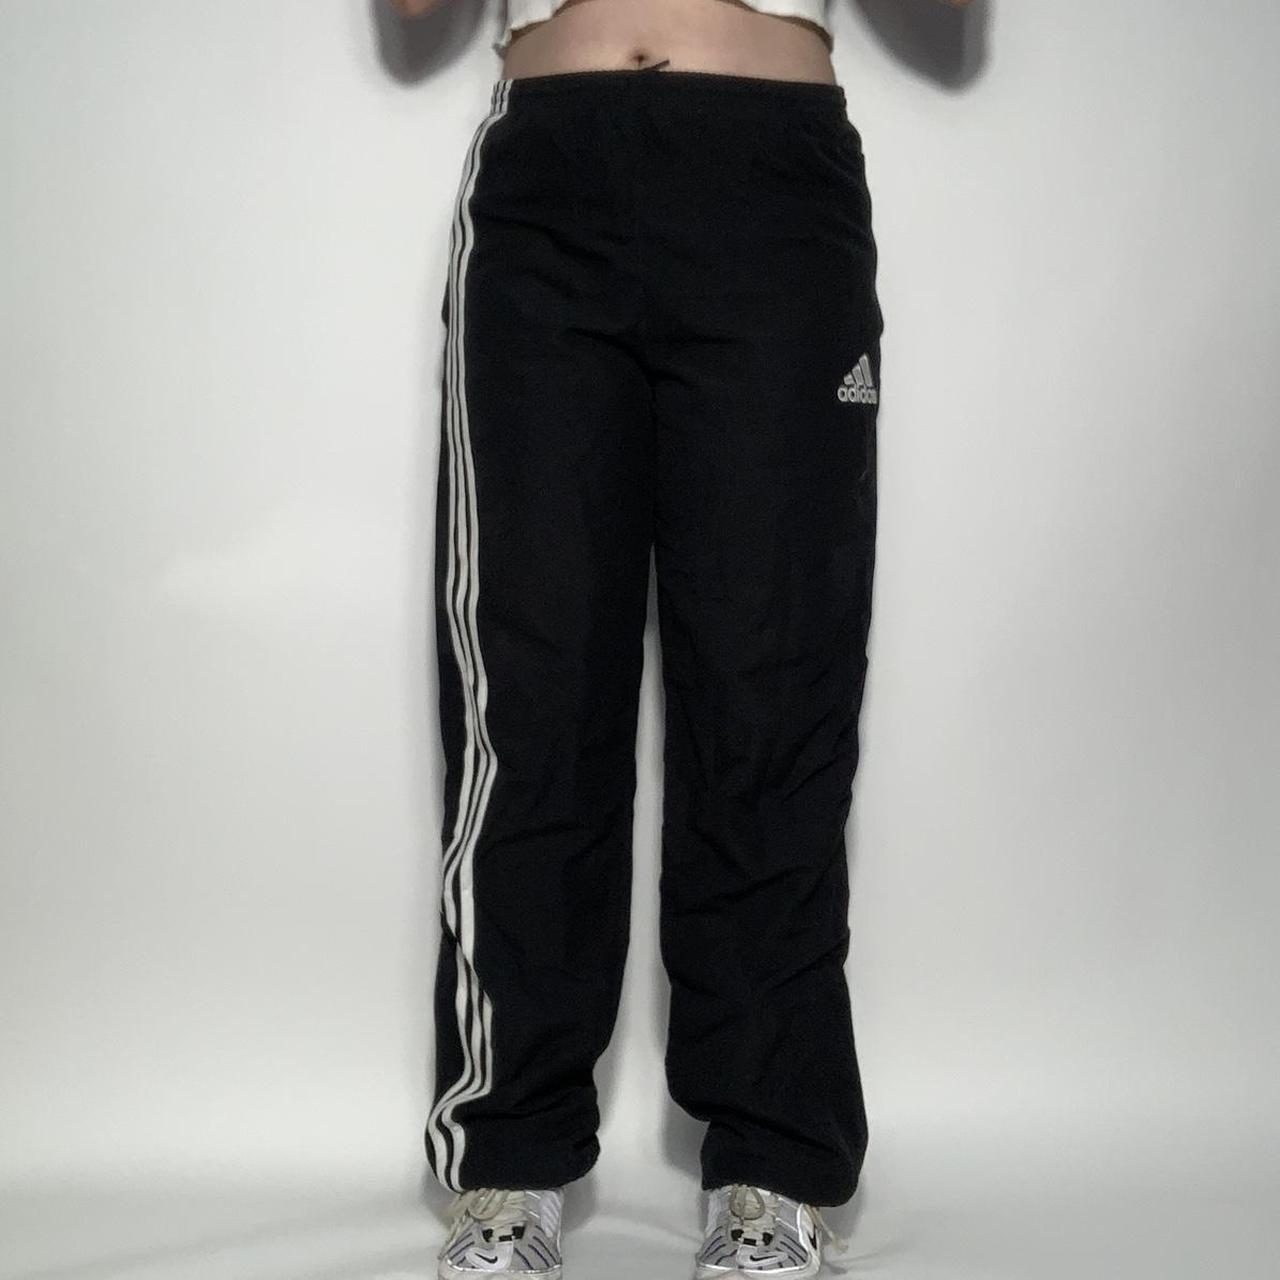 Adidas Team Issue Tapered Pants Black/White - Suncoast Softball